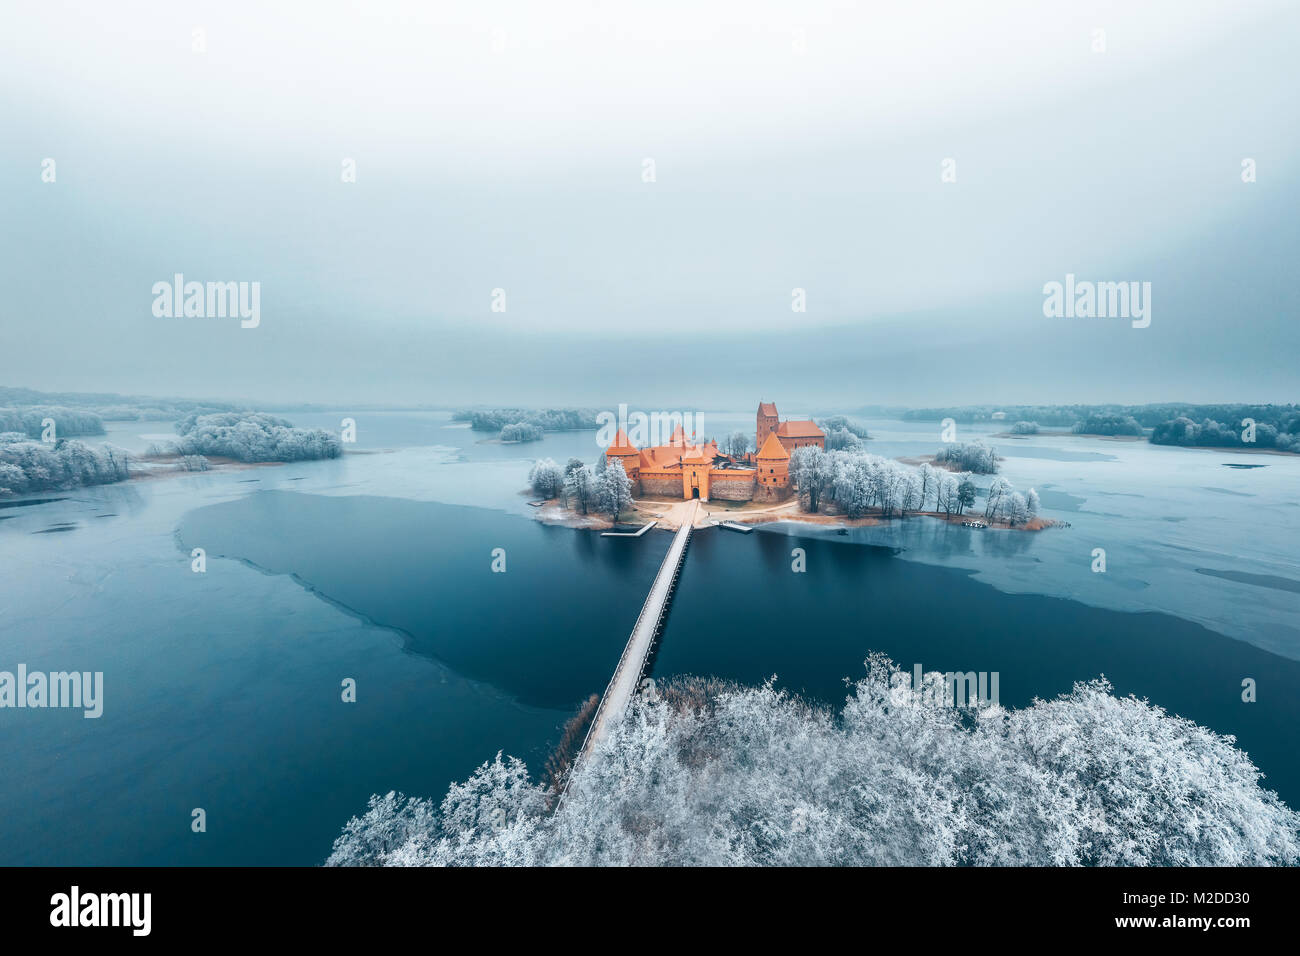 L'île de Trakai Castle, saison d'hiver, vue aérienne. Musée d'histoire. La lituanie en hiver Banque D'Images